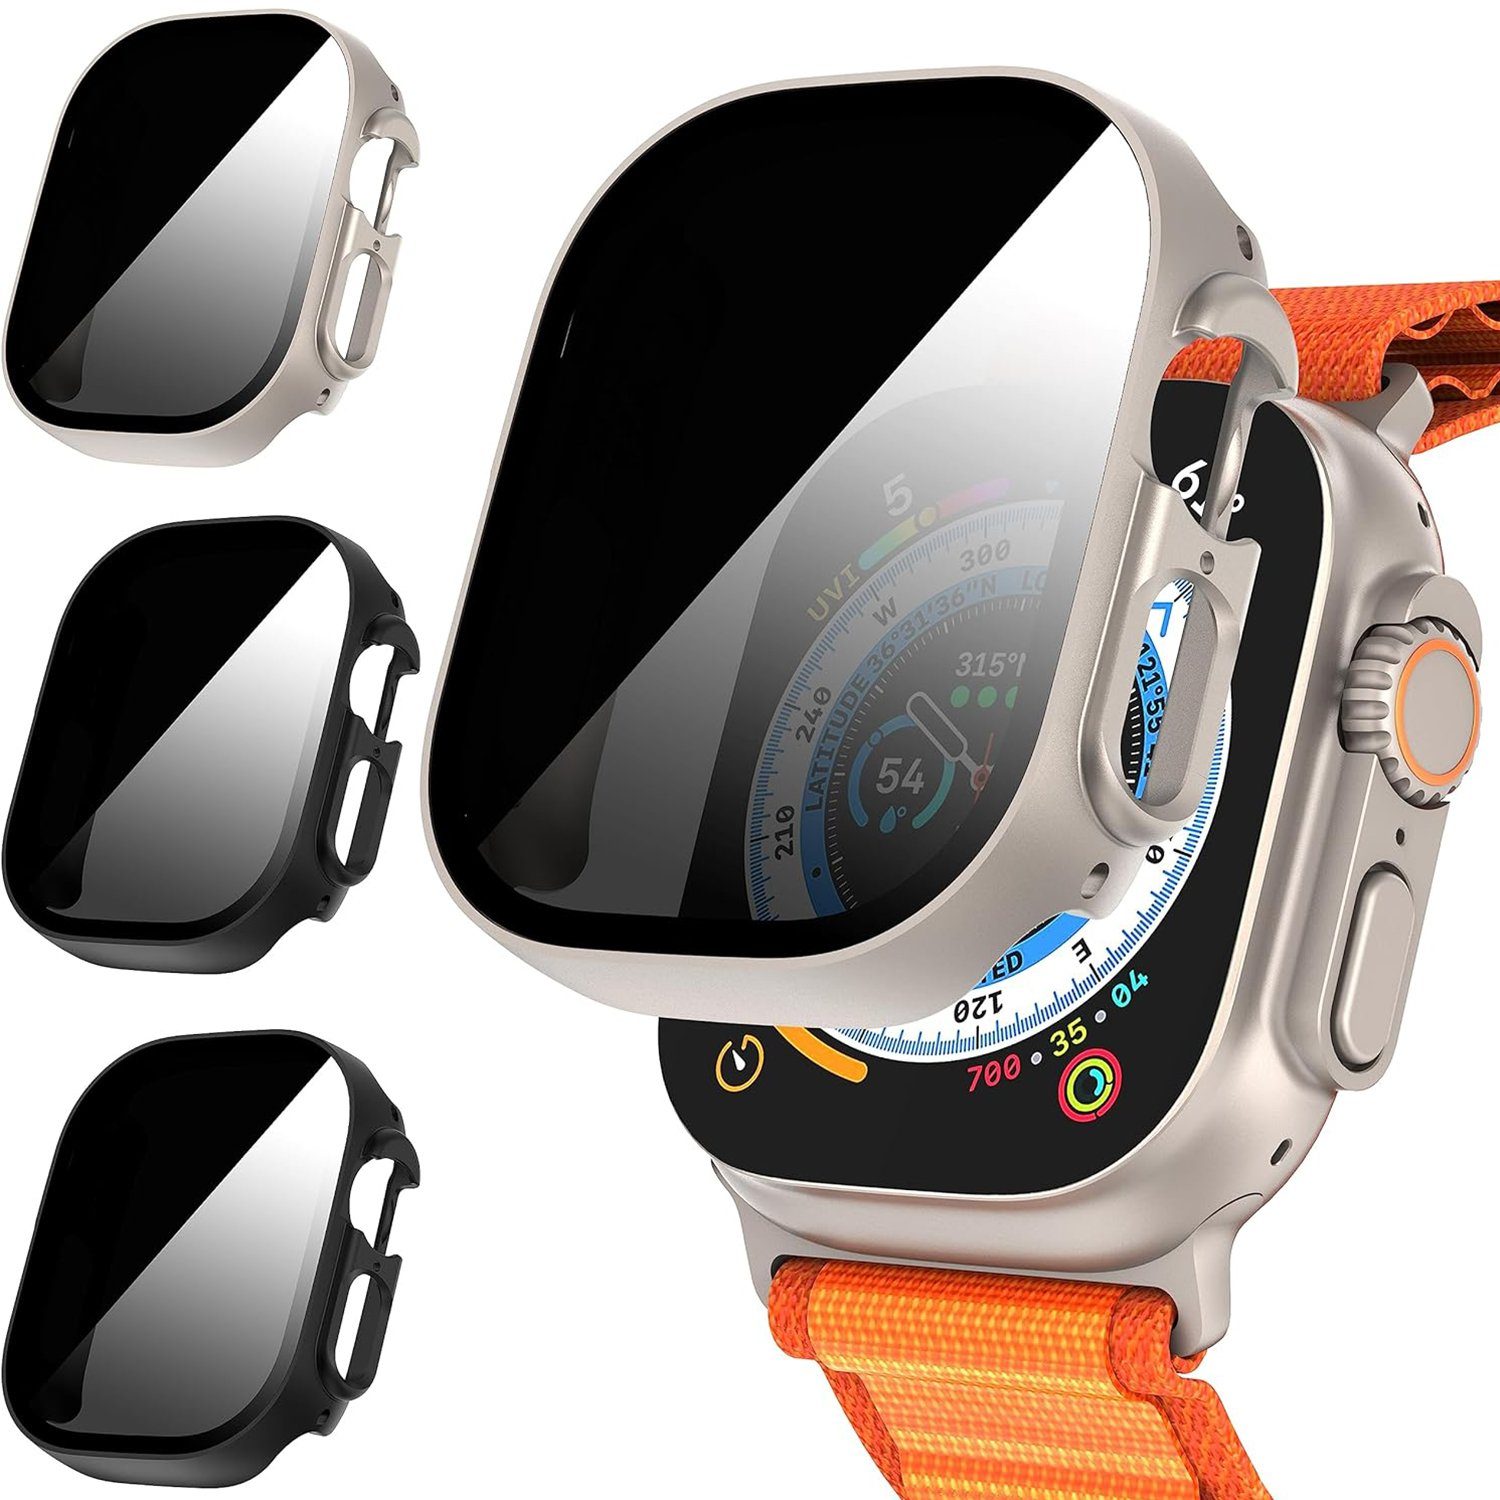 MAGICSHE Smartwatch-Hülle für Apple watch9/Ultra 2, 3-teilige Displayschutzfolie